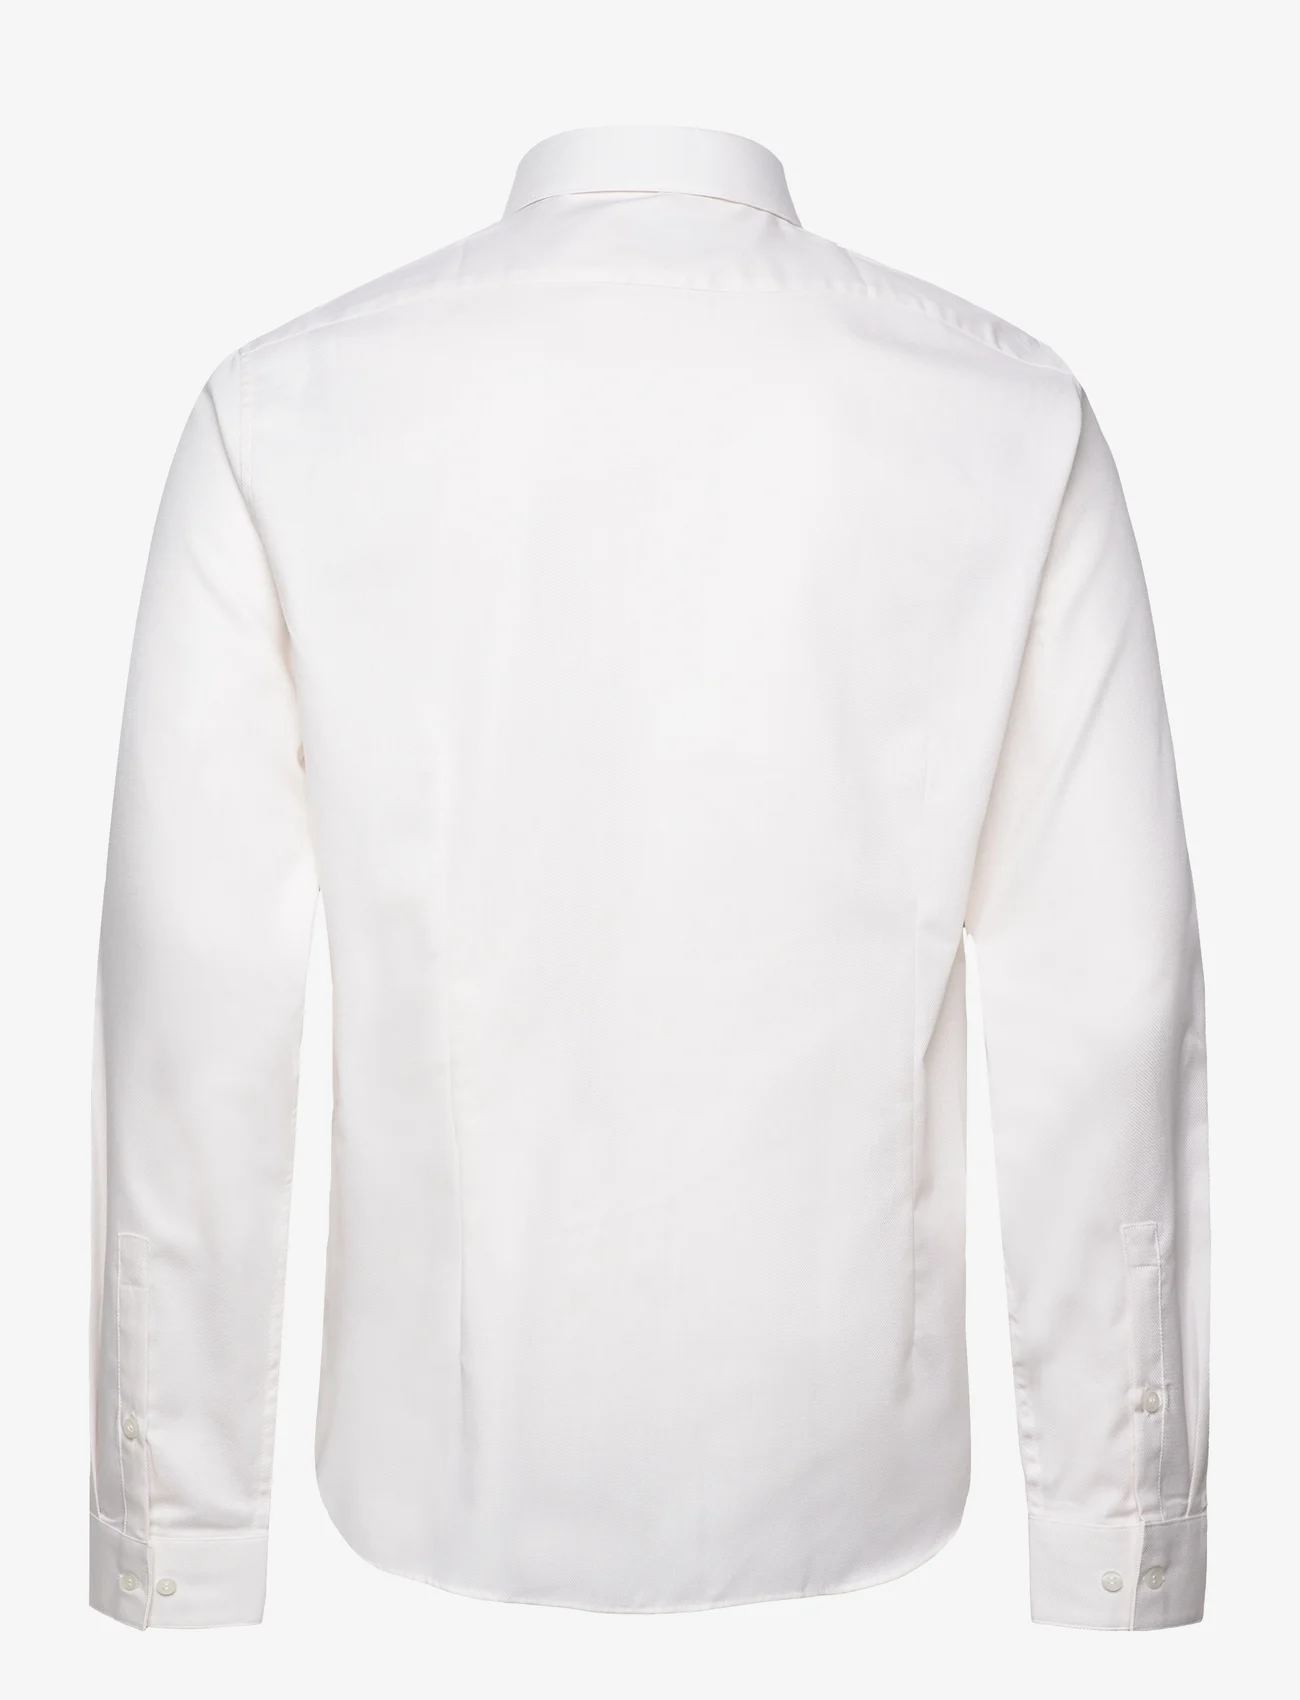 Calvin Klein - STRUCTURE SOLID SLIM SHIRT - laisvalaikio marškiniai - white - 1